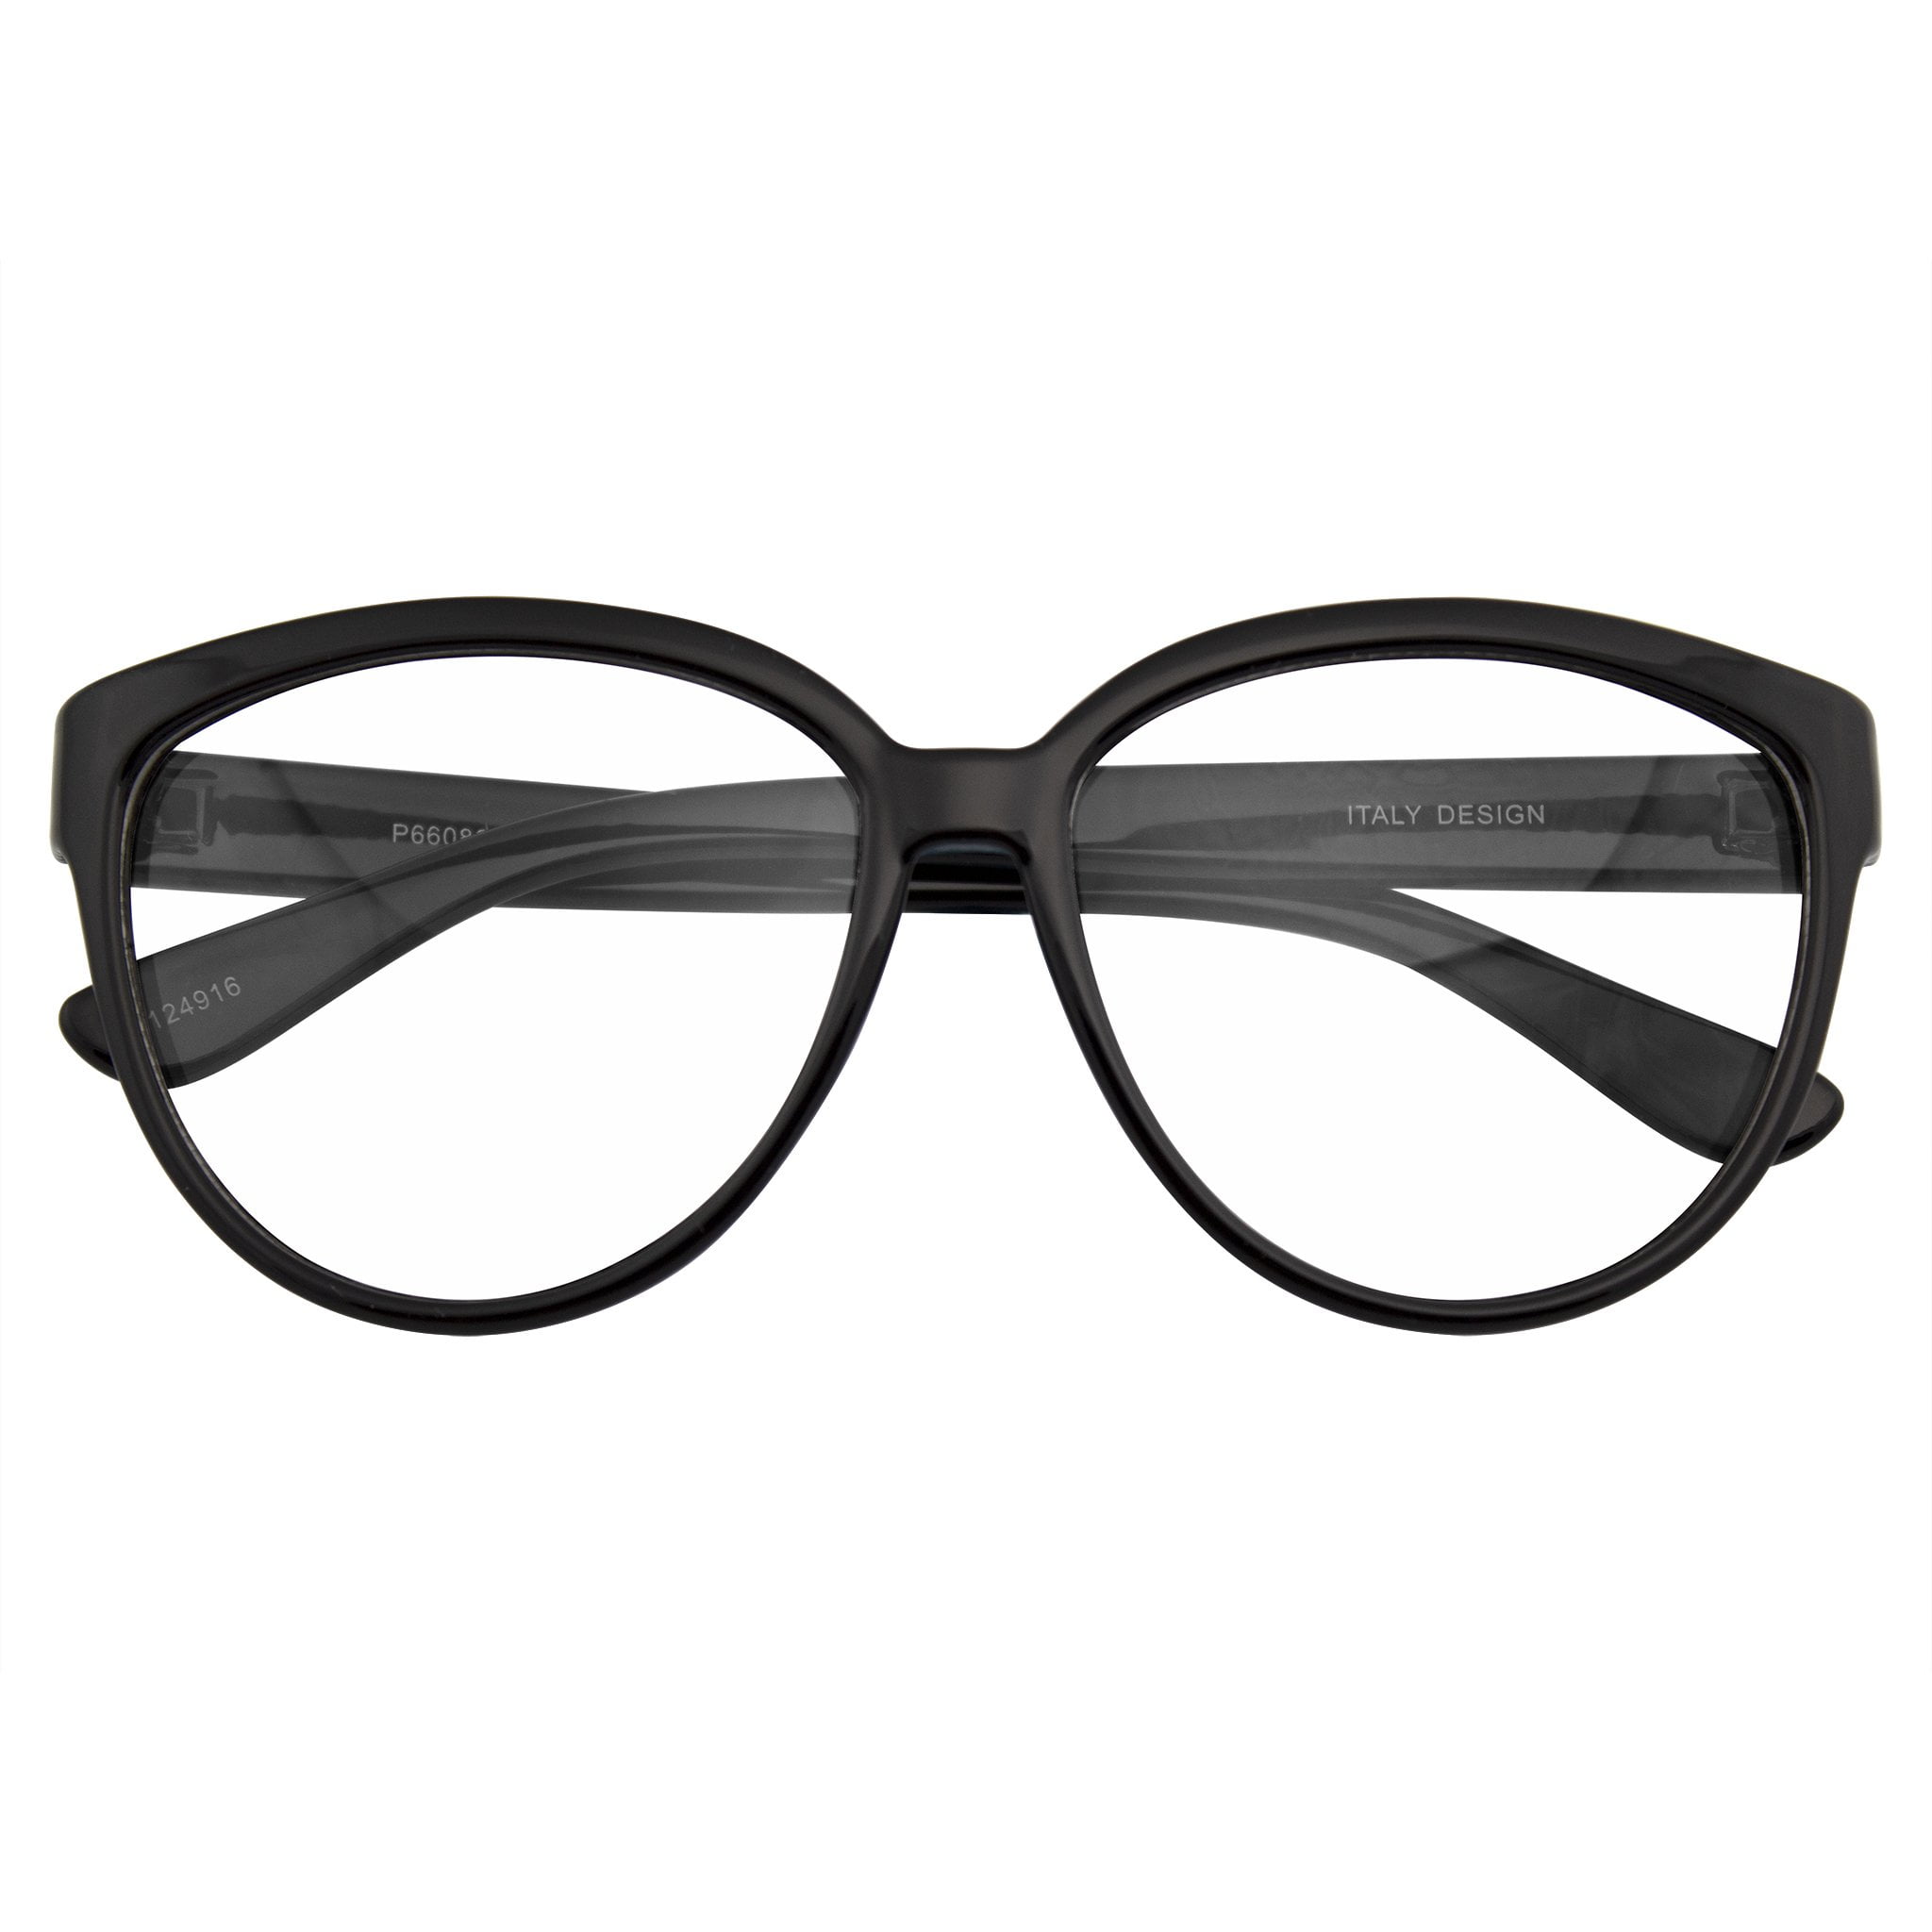 Clear Lenses Glasses Geek Style Black Gloss Rectangular Frames Women's Men's 